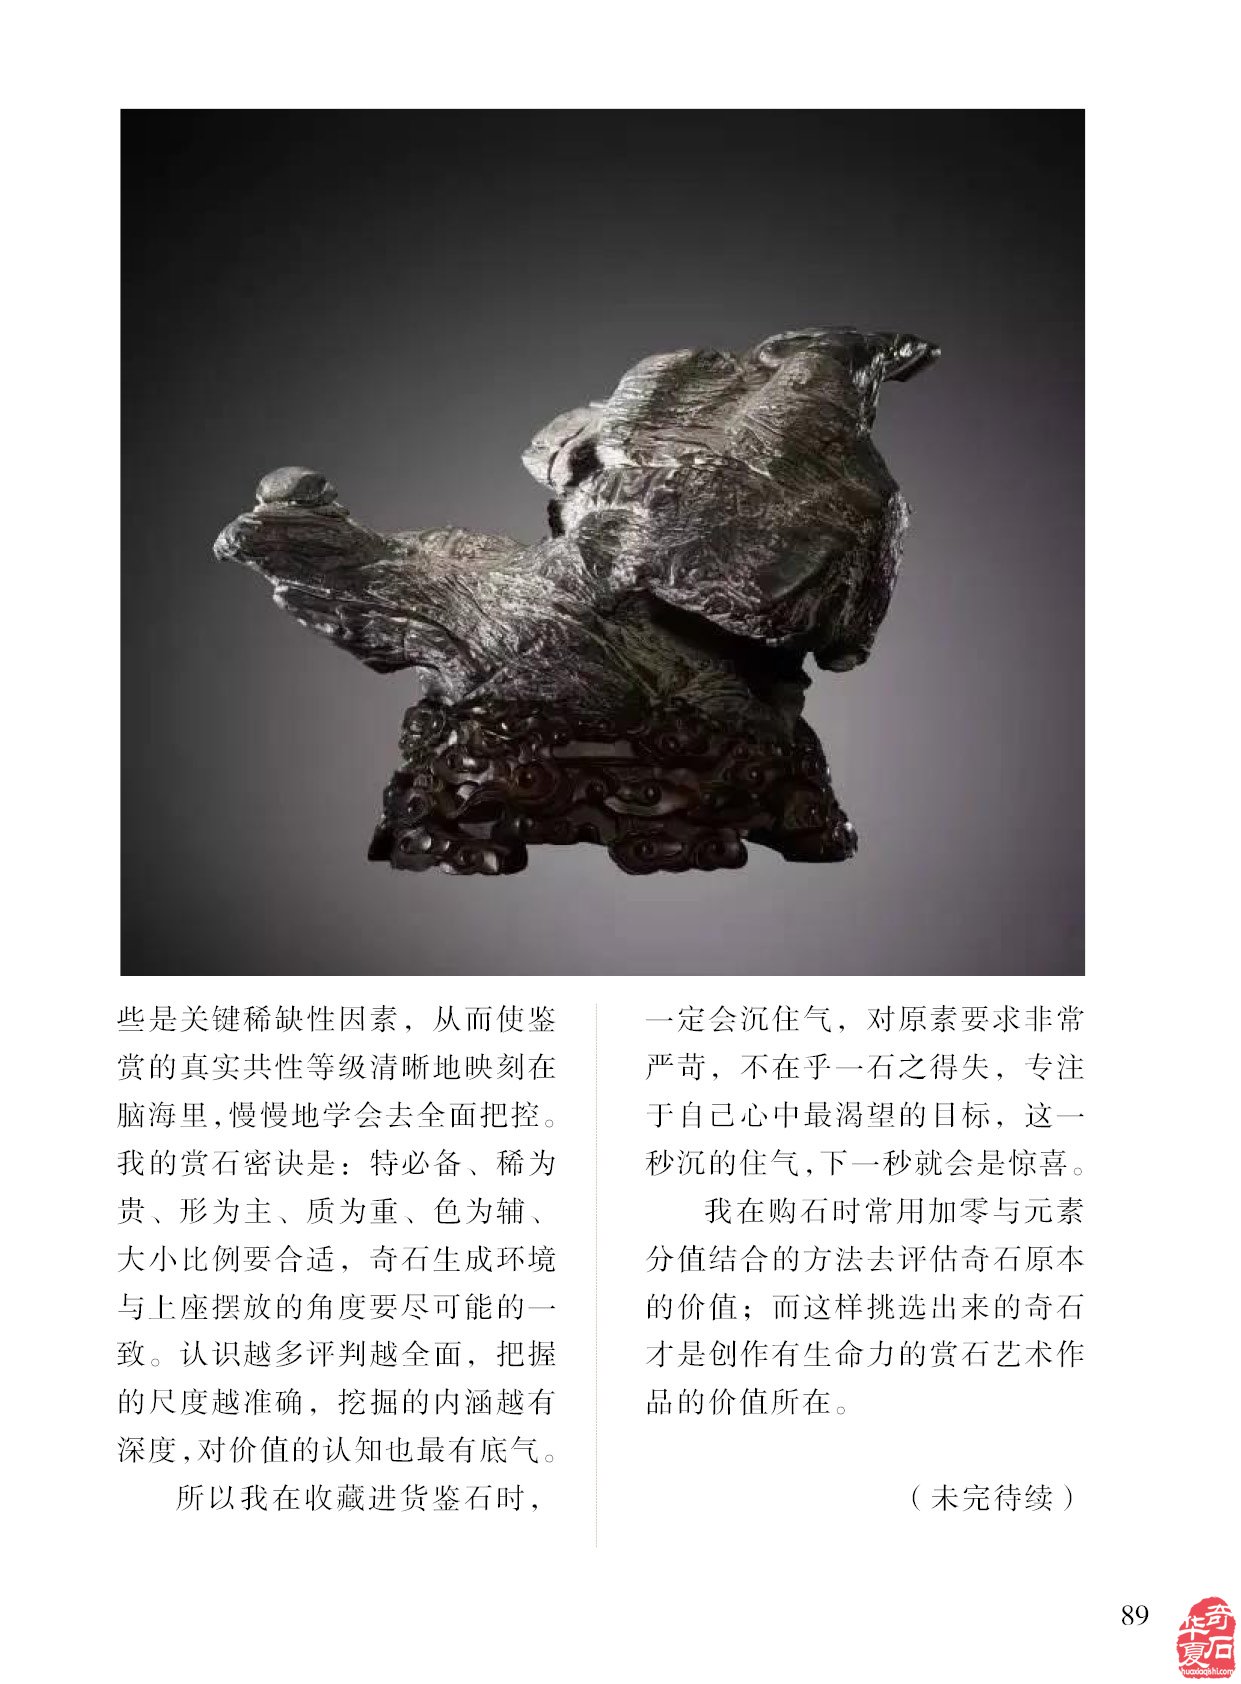 台湾图案石小品组合石怎么欣赏《于公赏石》告诉你